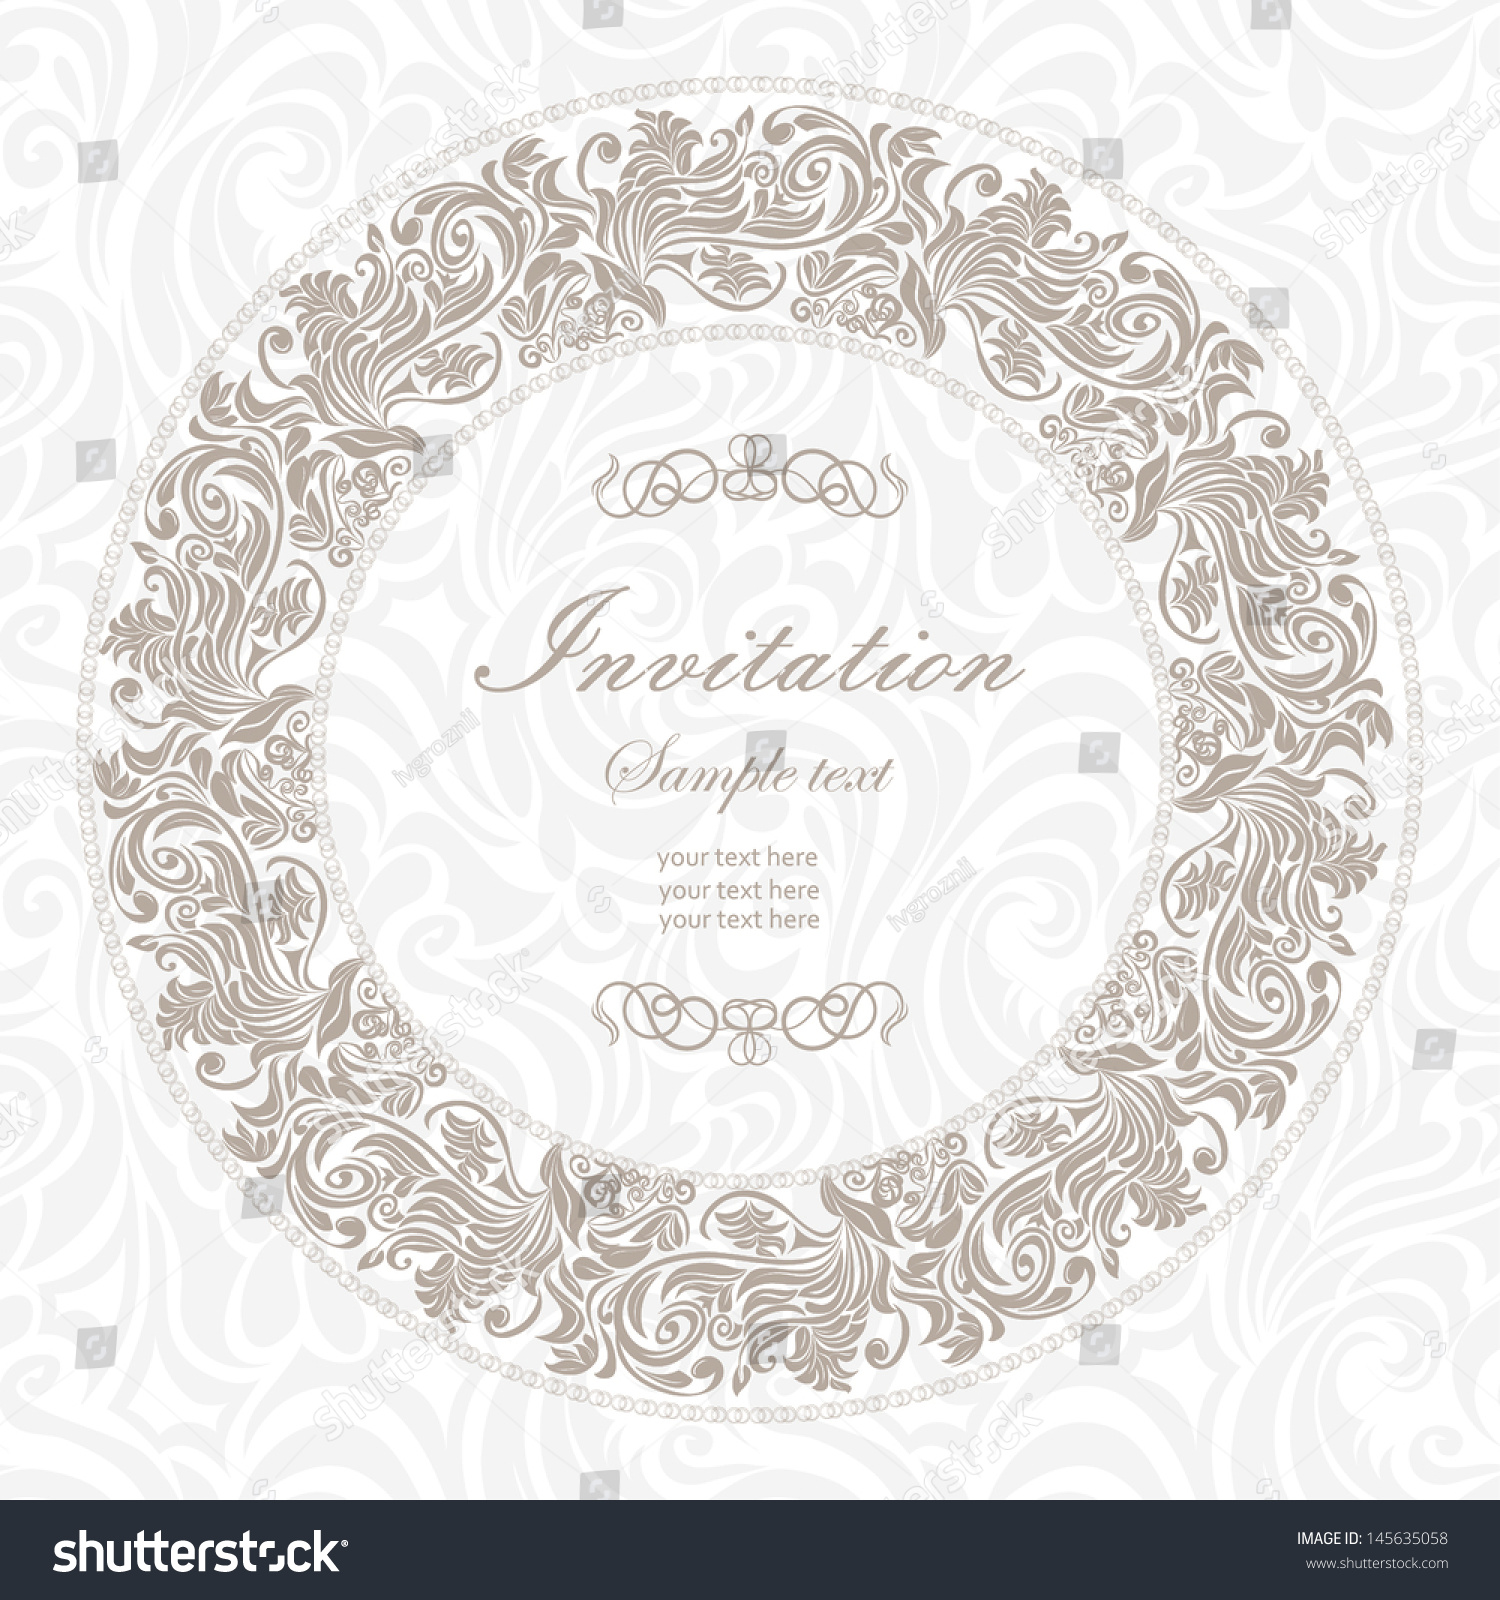 Elegant vintage frame with floral pattern #145635058